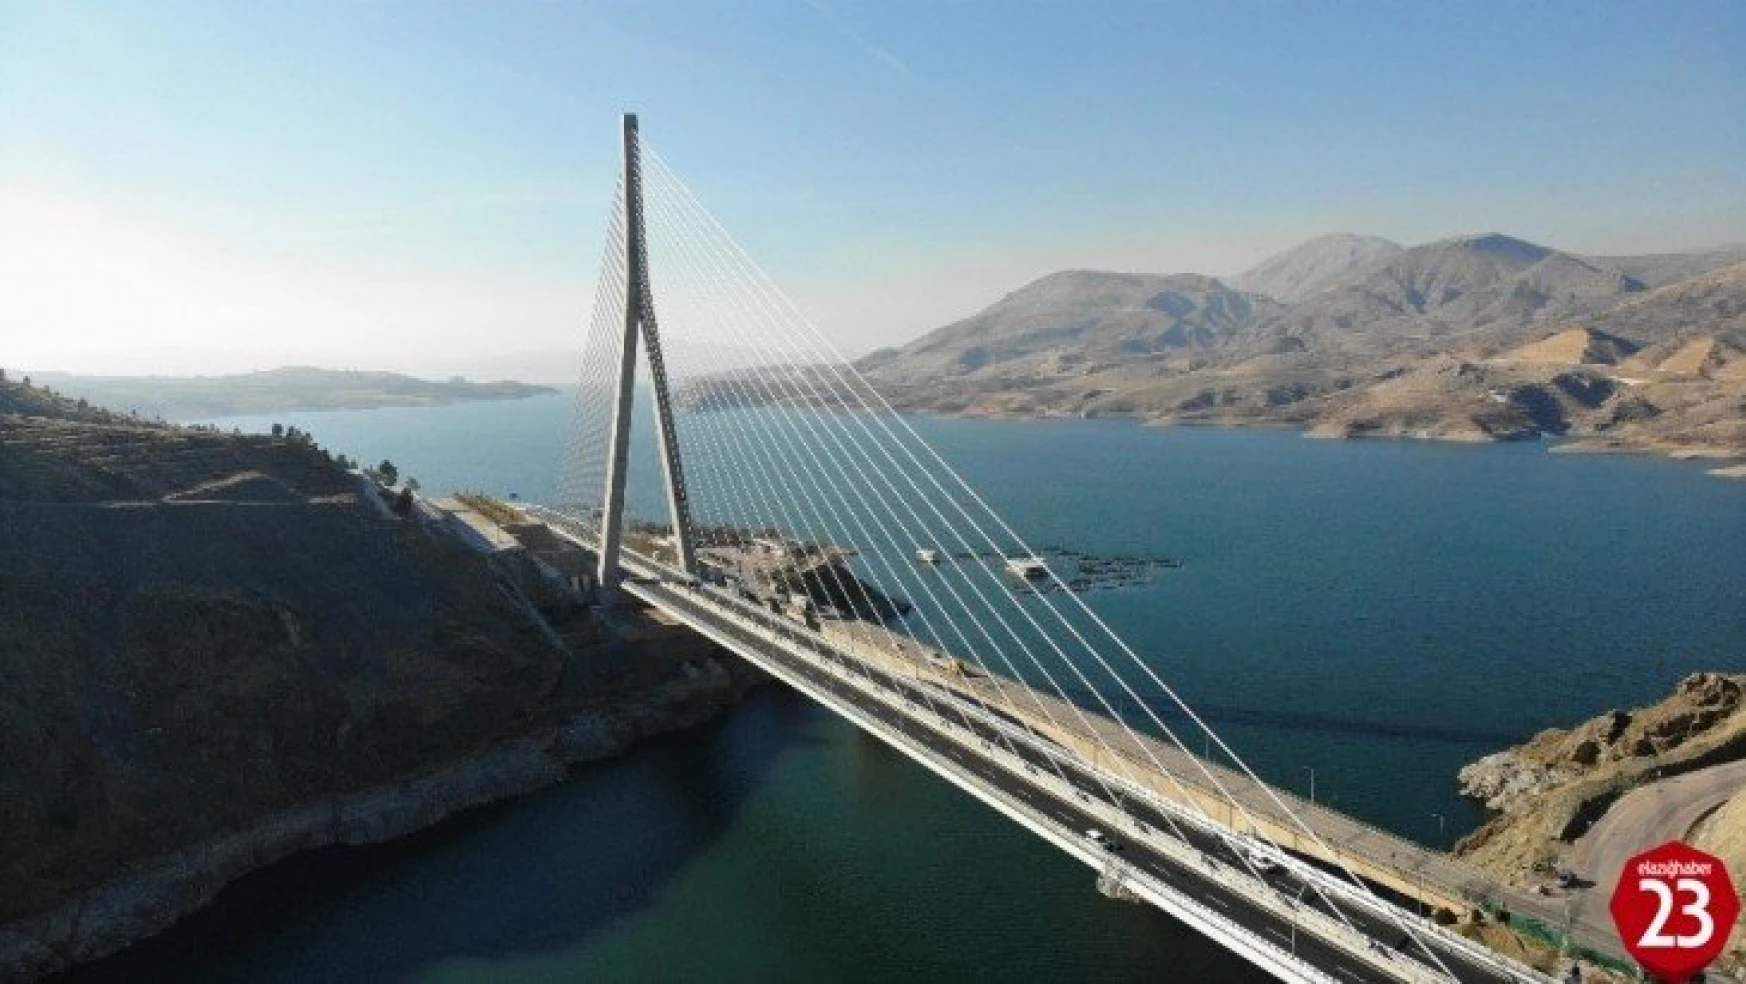 16 ili bağlayan yeni Kömürhan Köprüsü yarın açılıyor